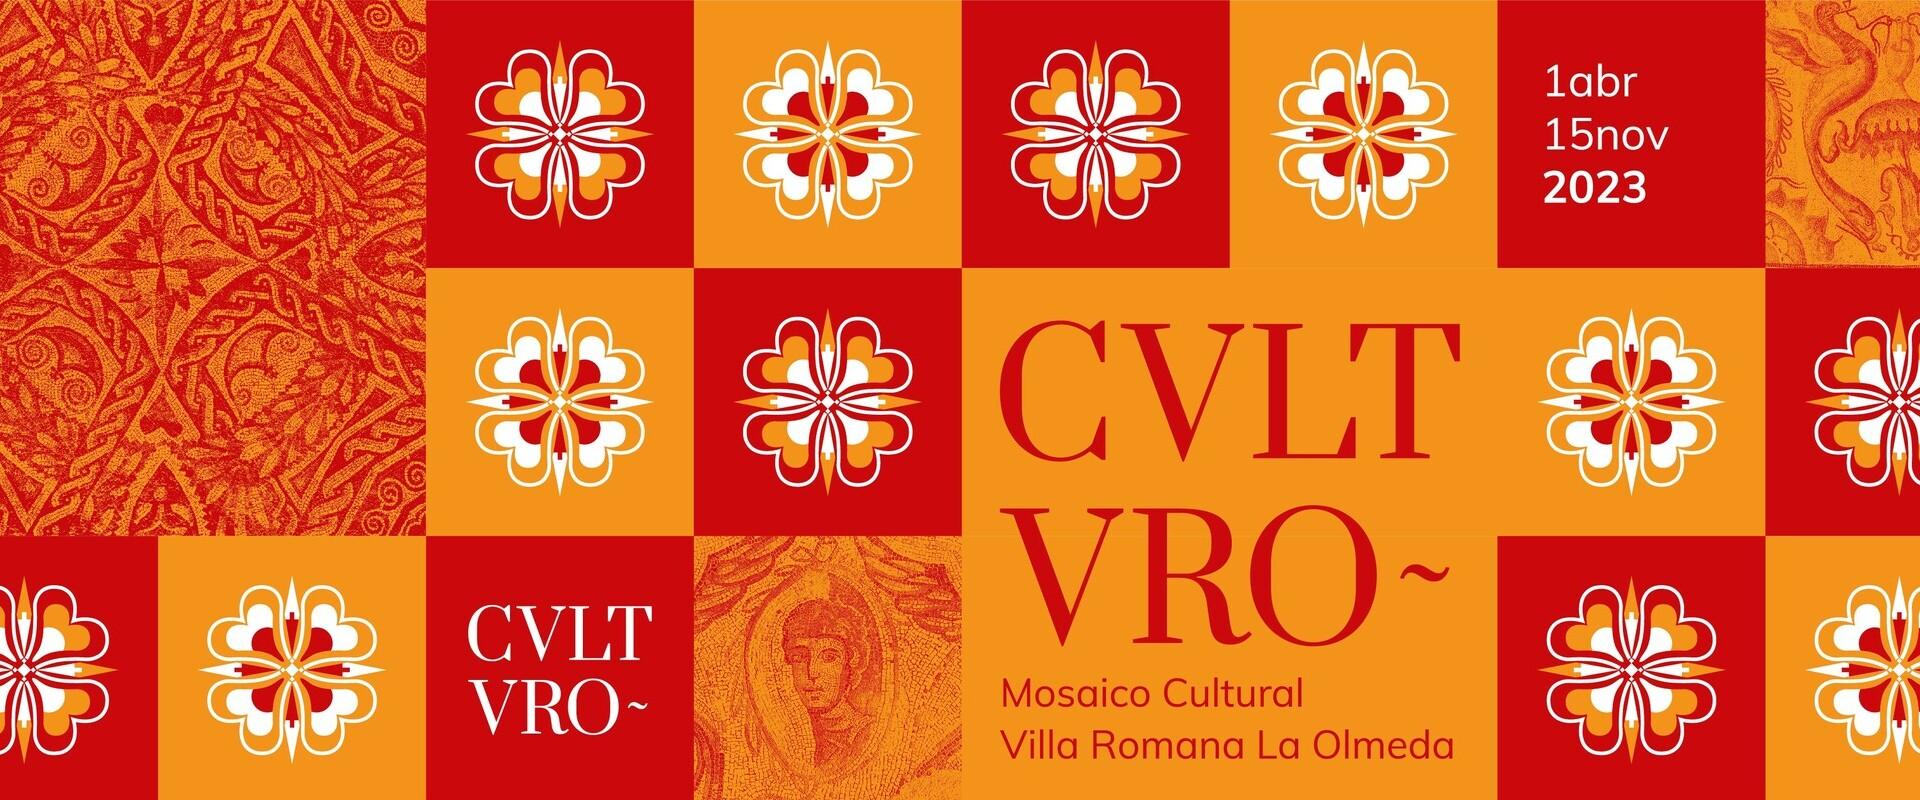 CVLTVRO MOSAICO CULTURAL VILLA ROMANA LA OLMEDA PROGRAMA DE ACTIVIDADES